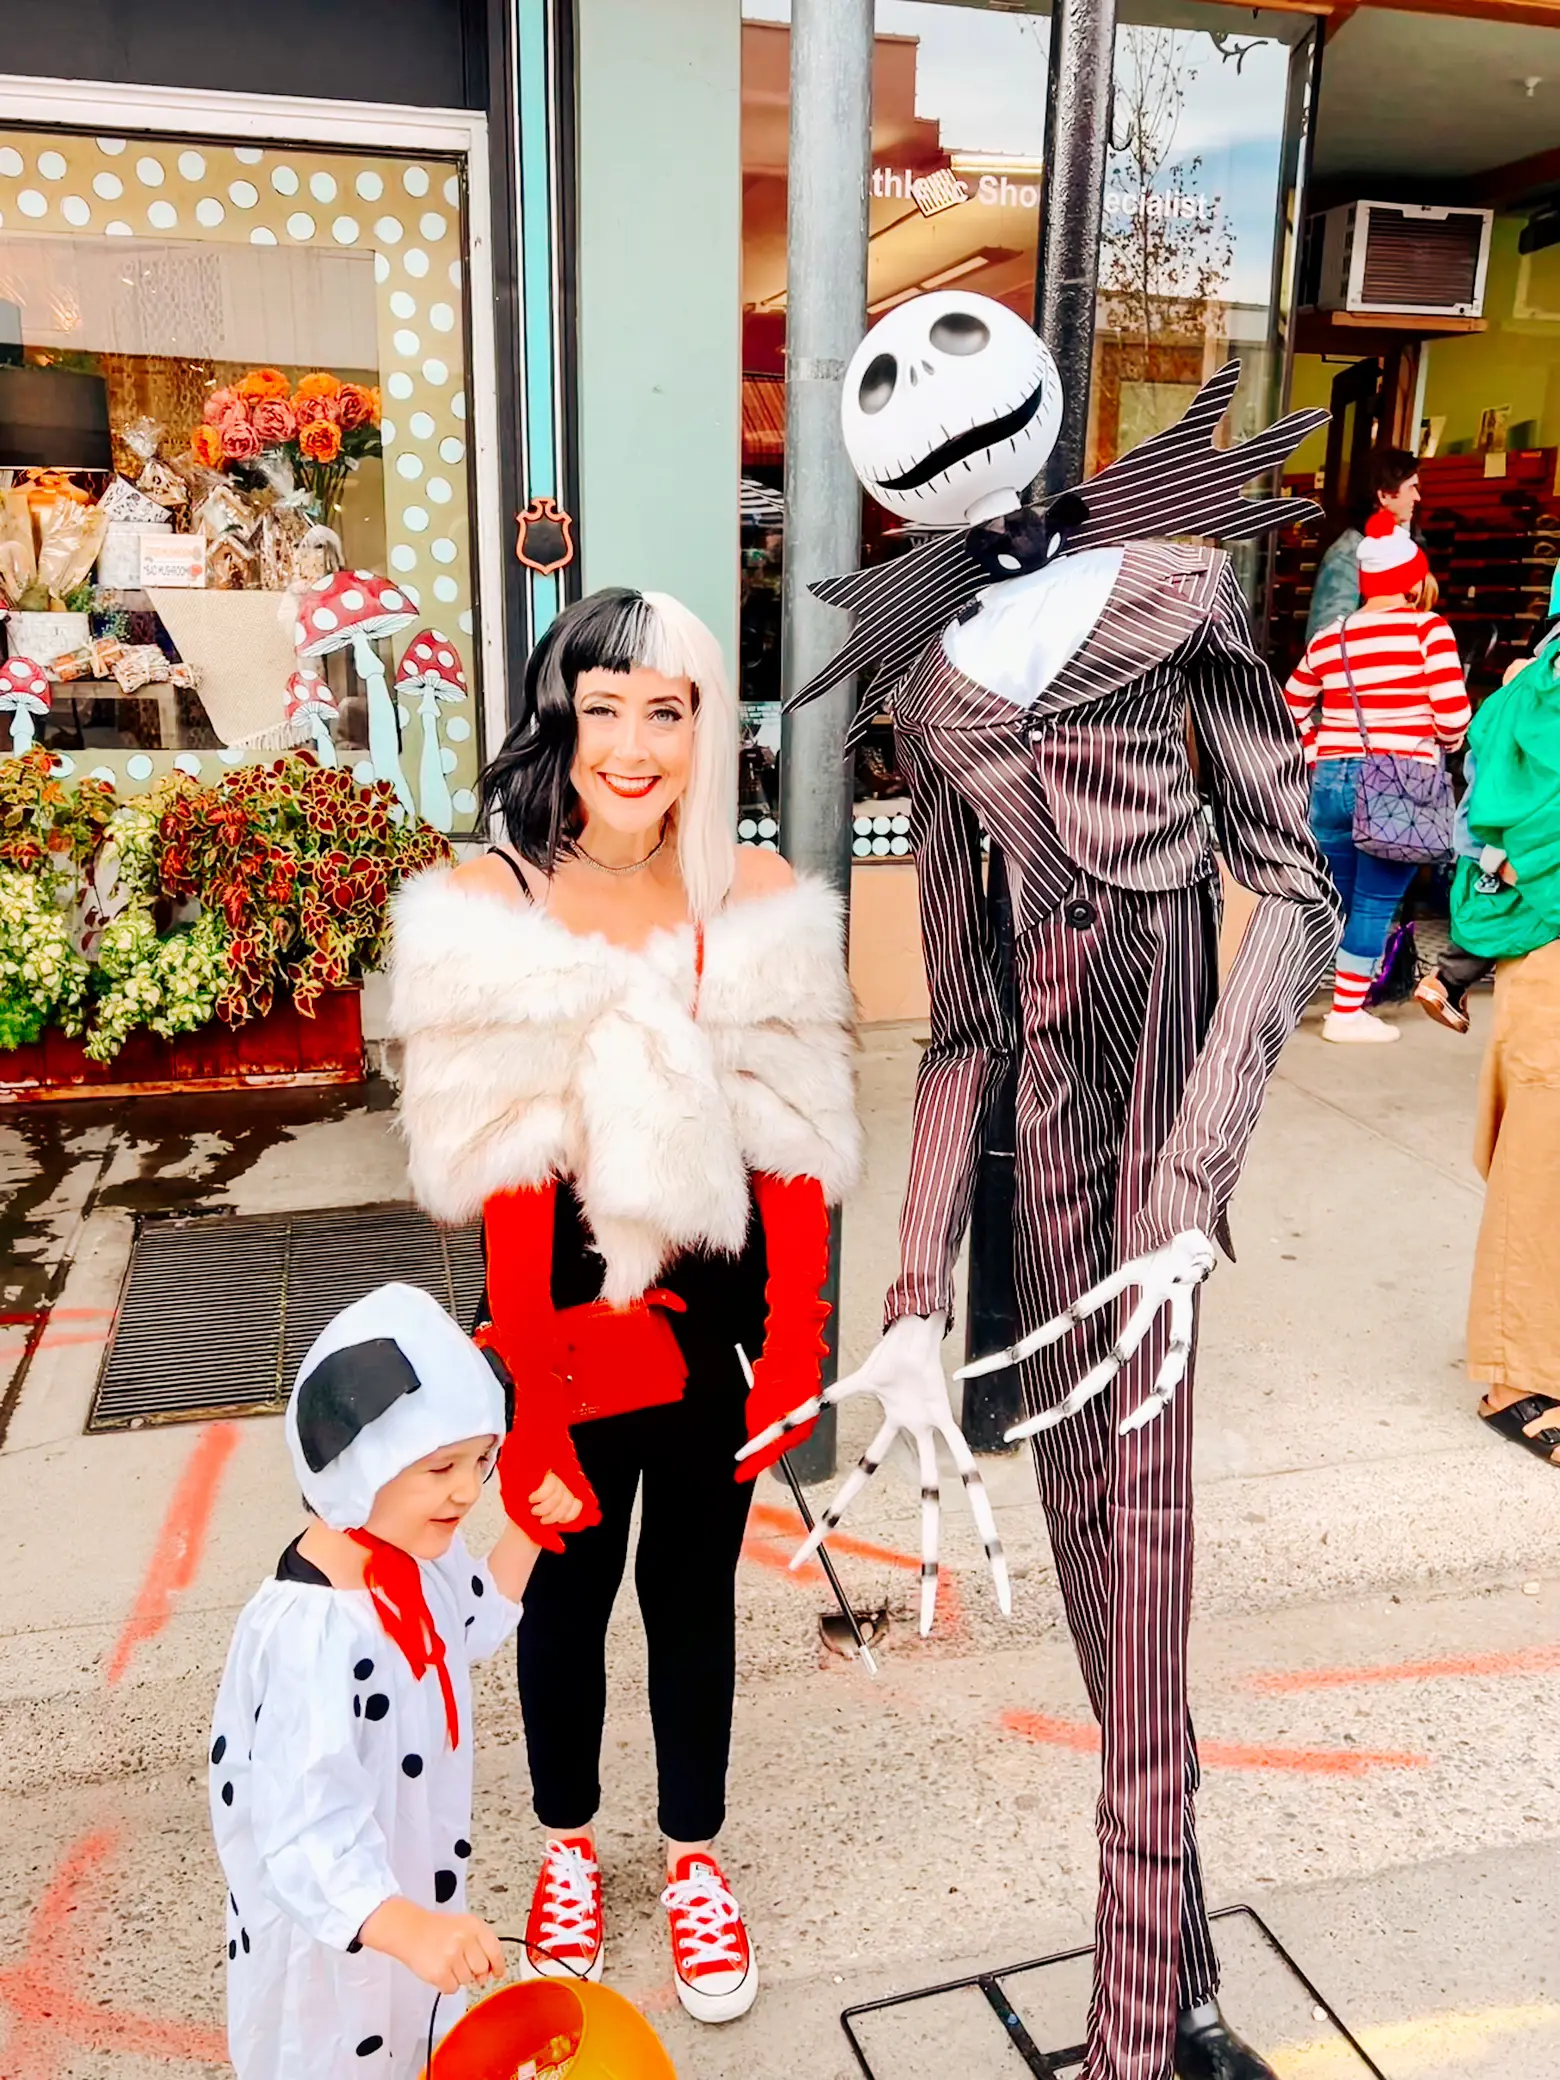 Cruella Family Costume - 101 Dalmatians Family Costume